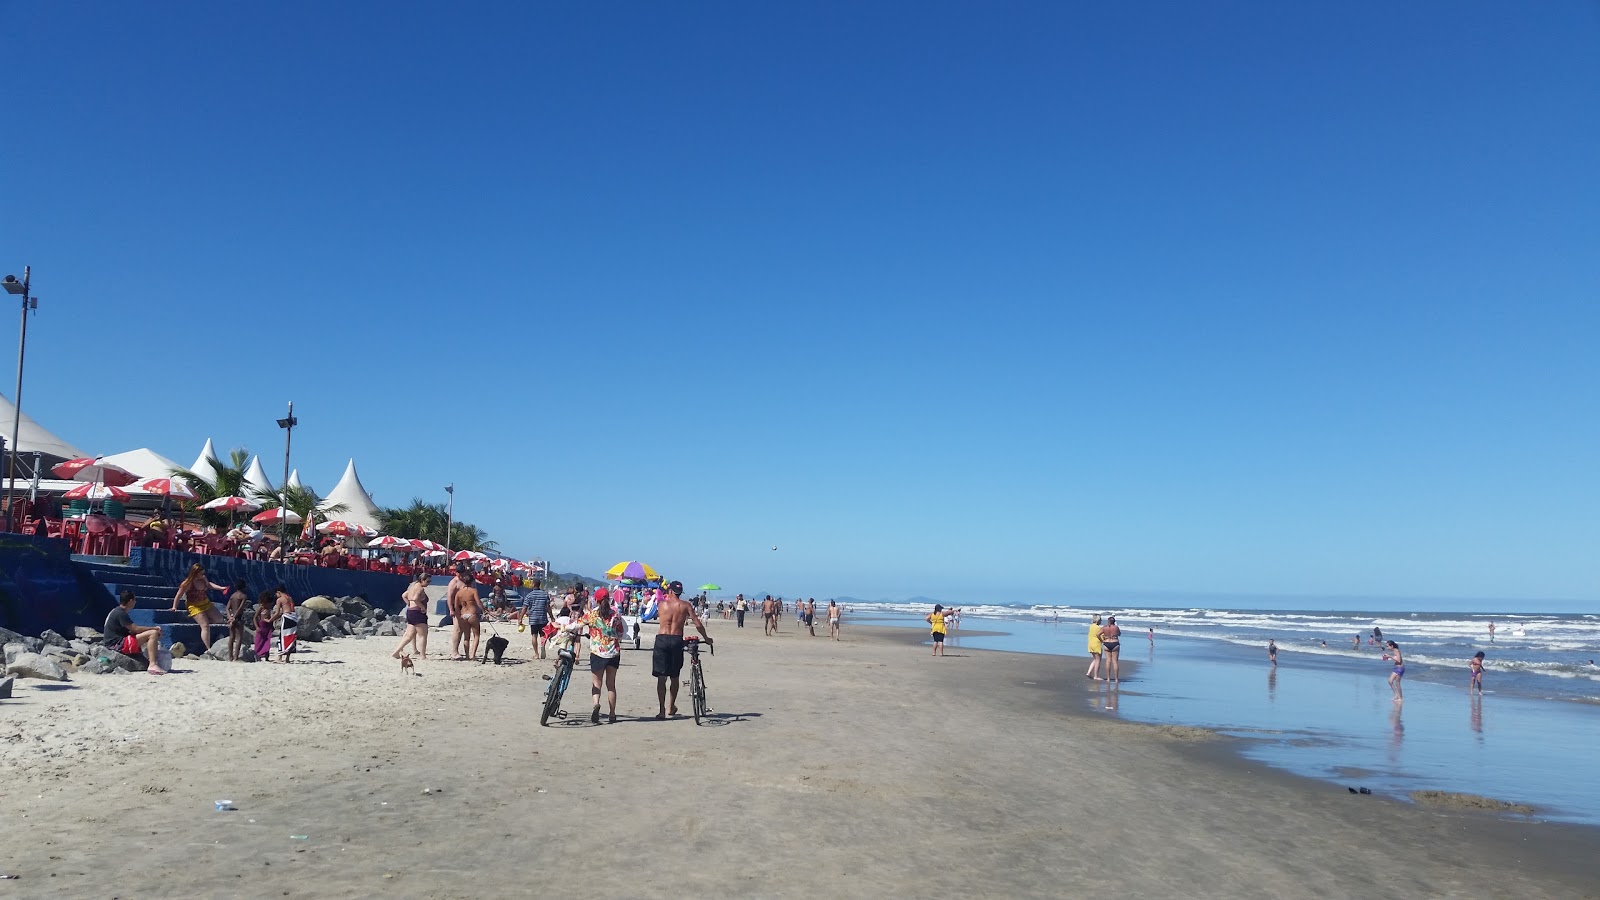 Agenor de Campos Plajı'in fotoğrafı parlak ince kum yüzey ile